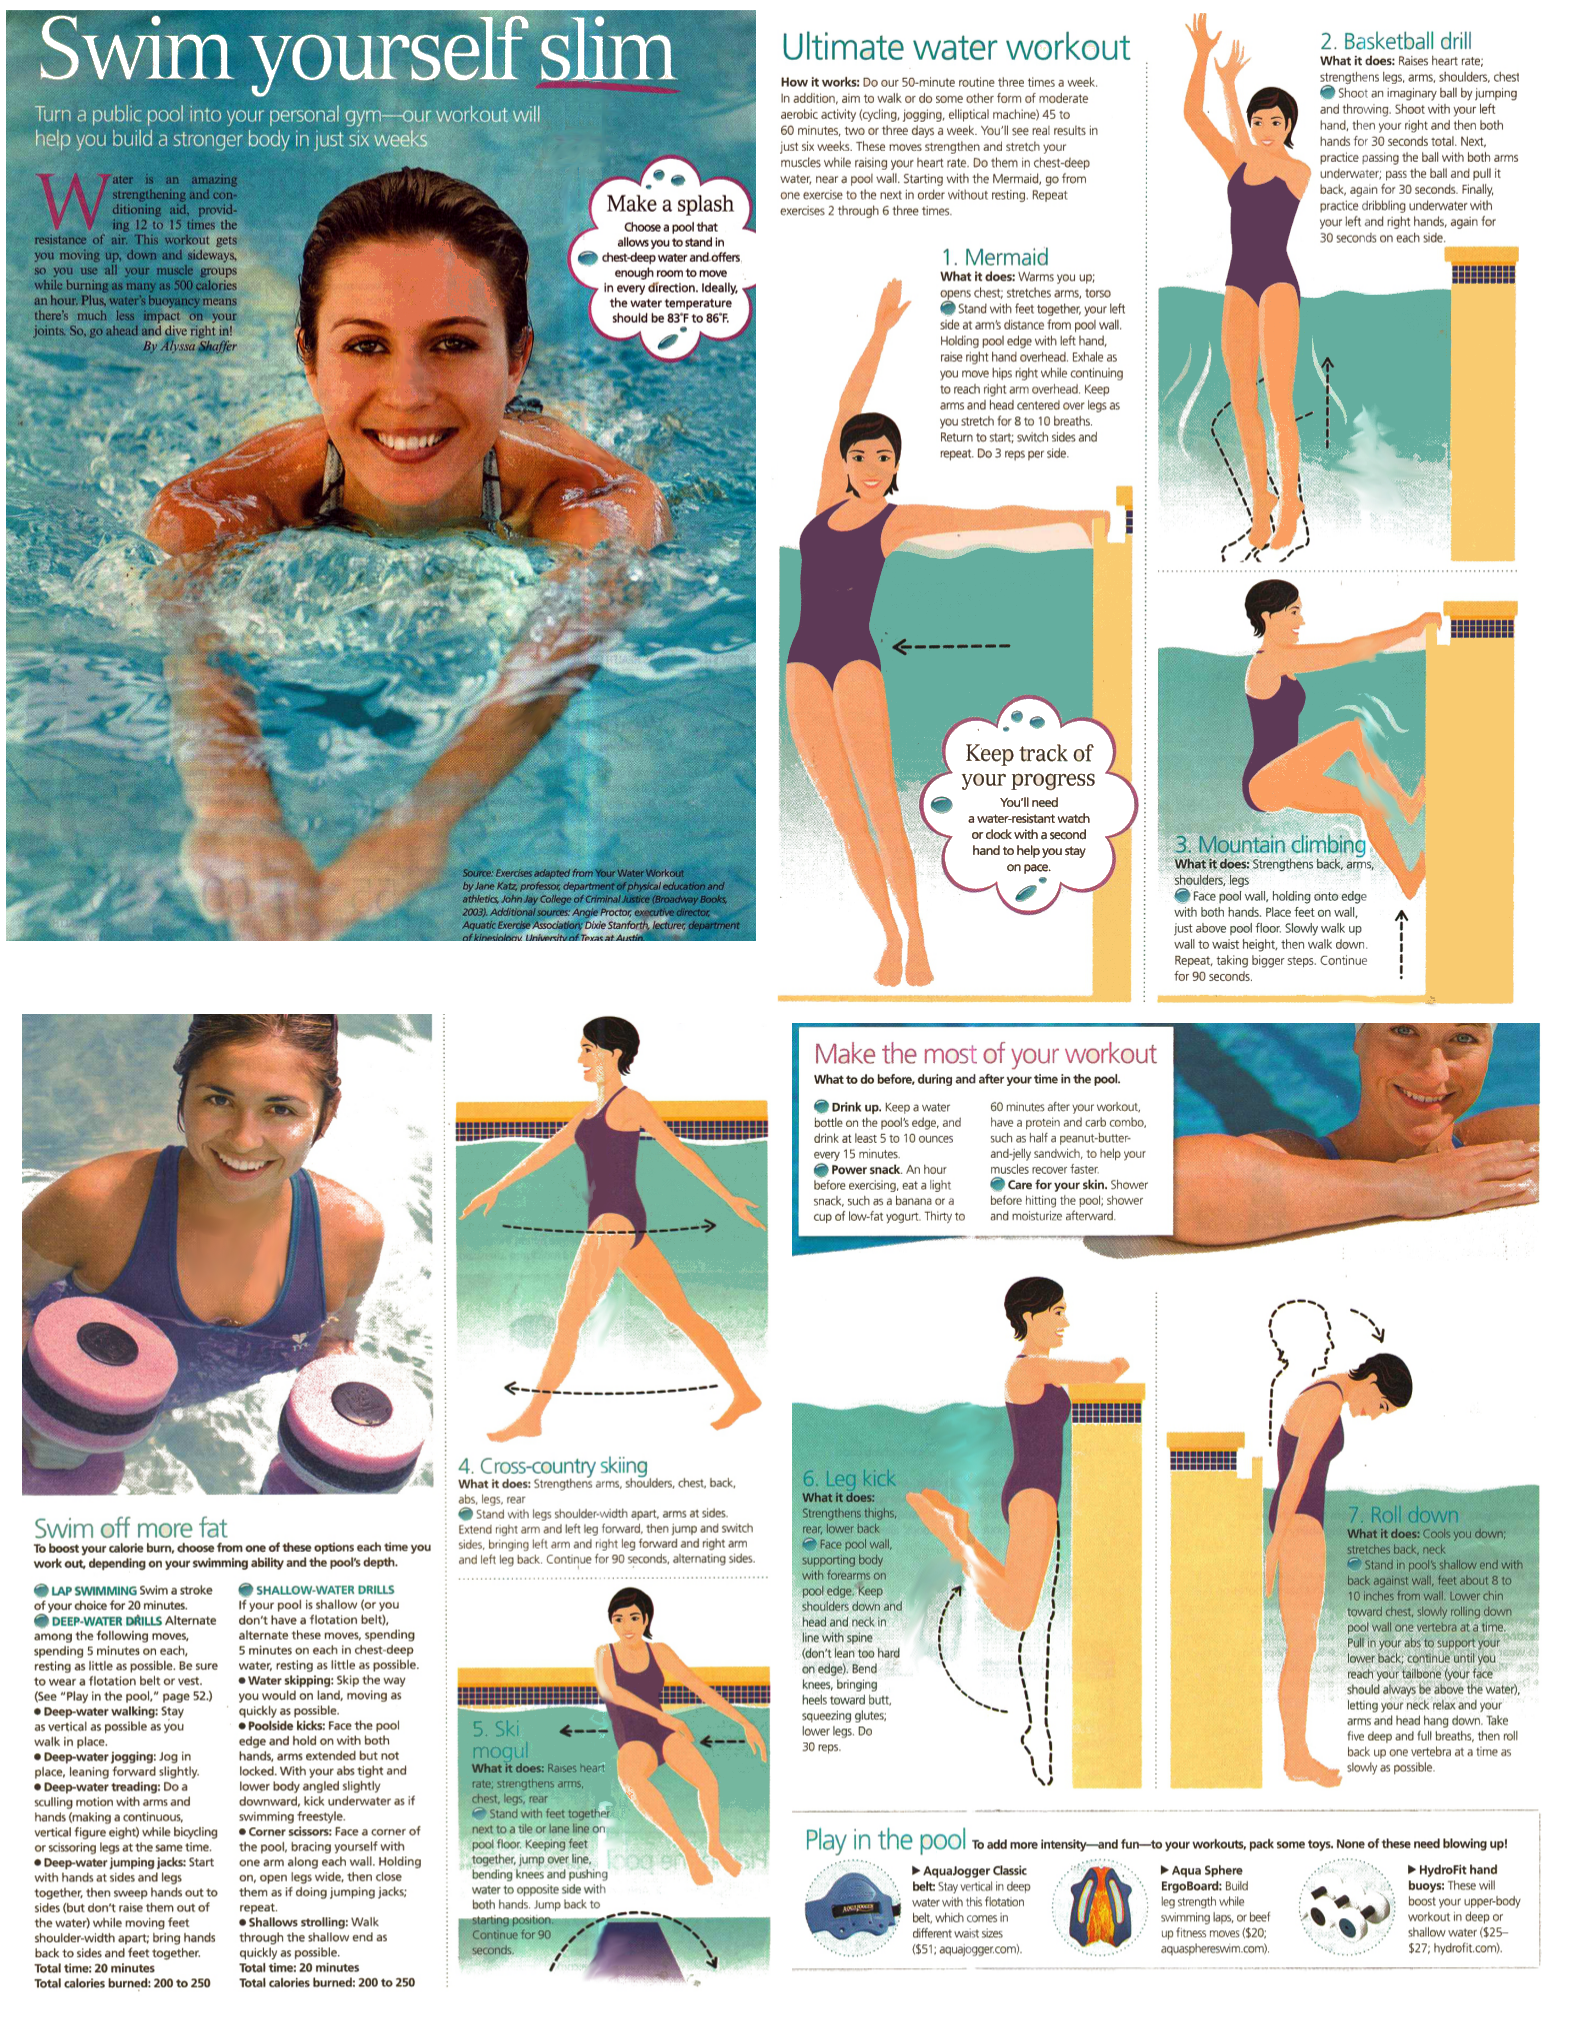 Аквааэробика: 18 упражнений в воде для стройной фигуры